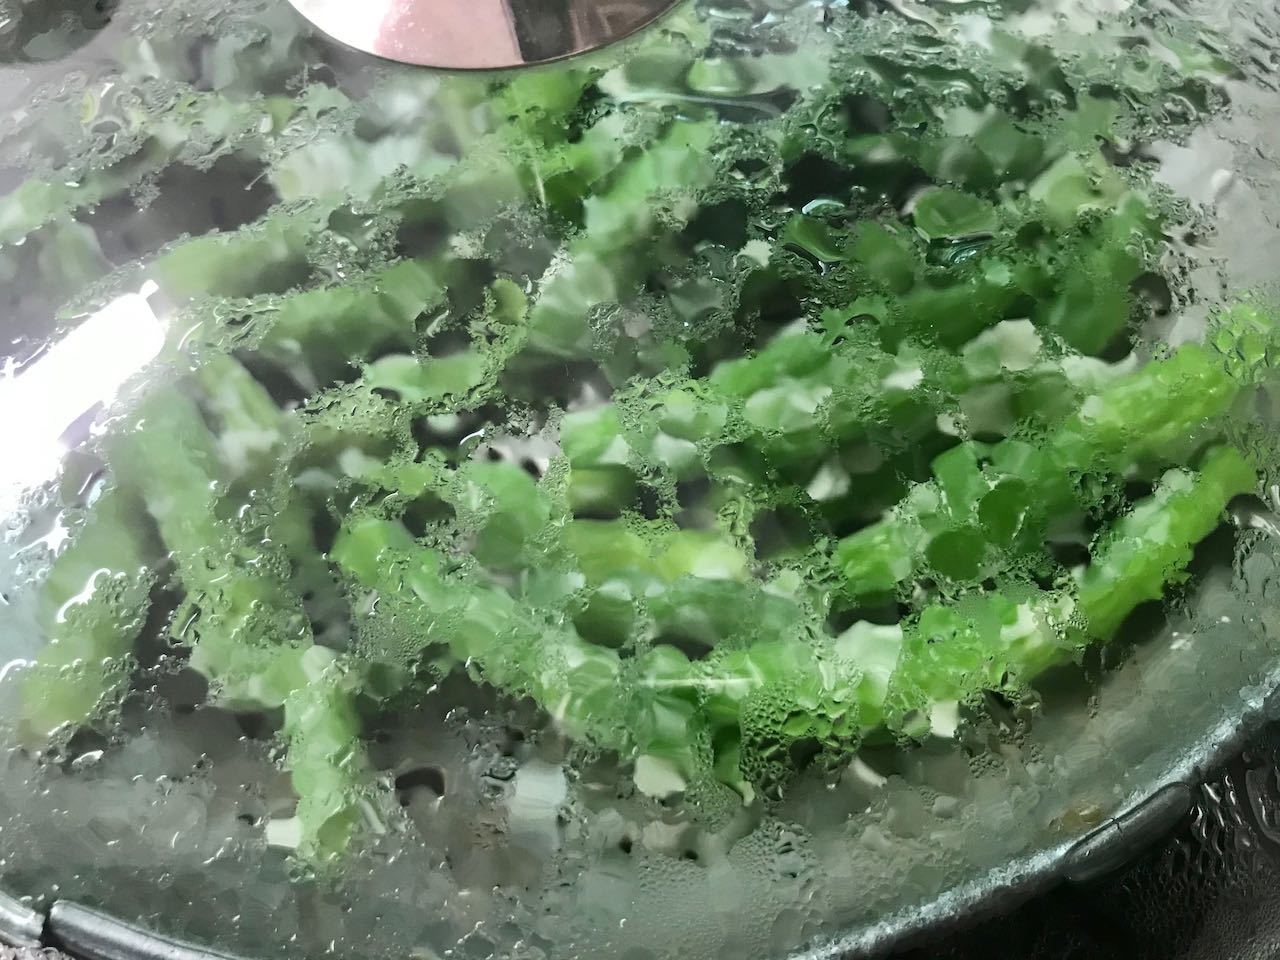 /lifelog/assets/2021-03-28-cooking-steamed-green-pepper-04.jpg